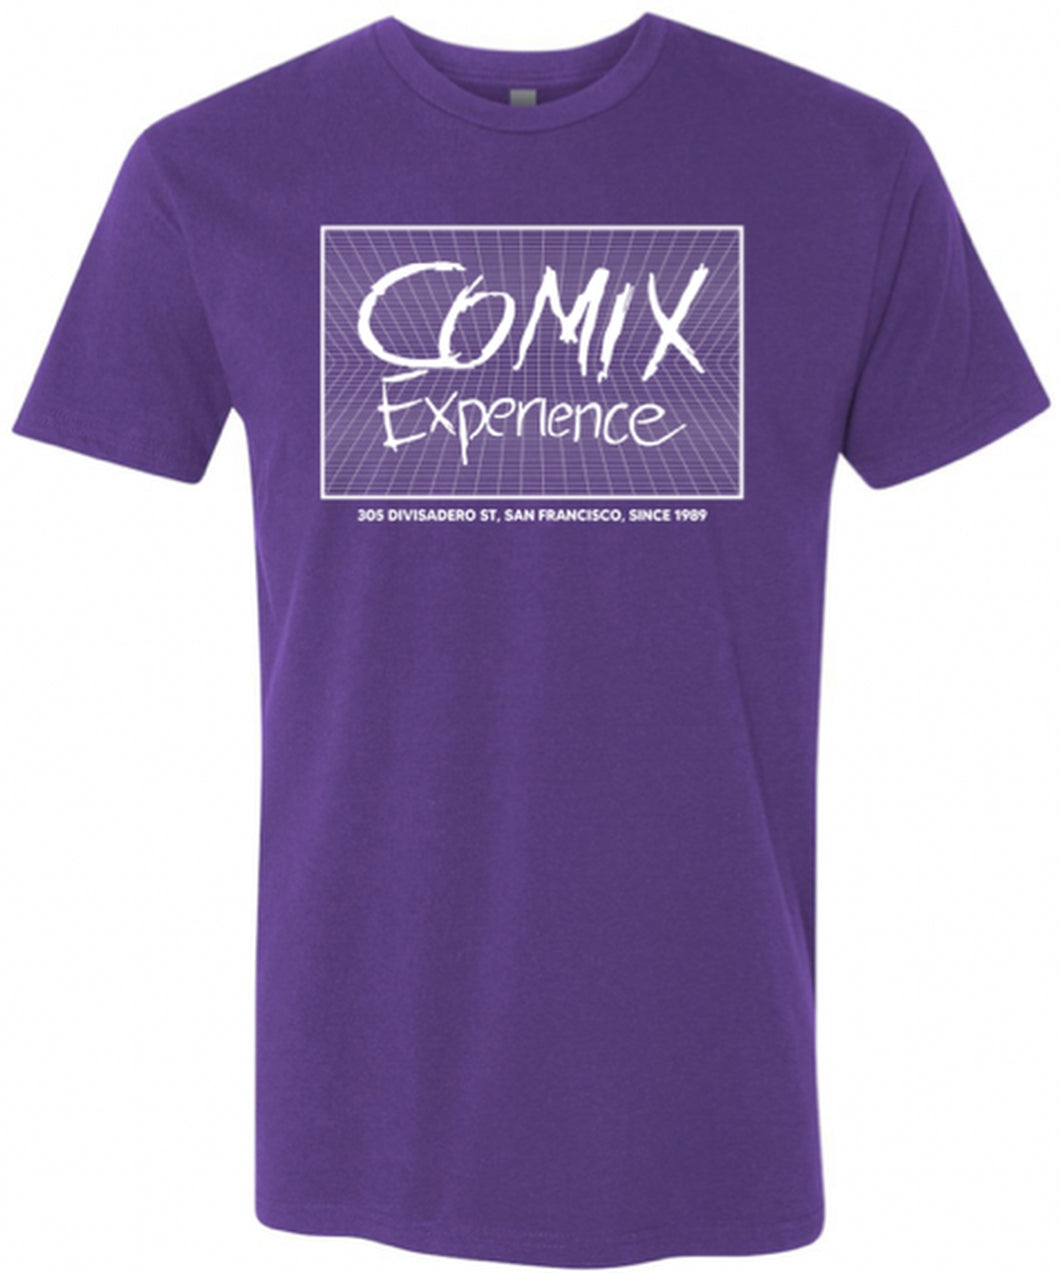 COMIX EXPERIENCE 35TH ANN TSHIRT PURPLE SIZE XL